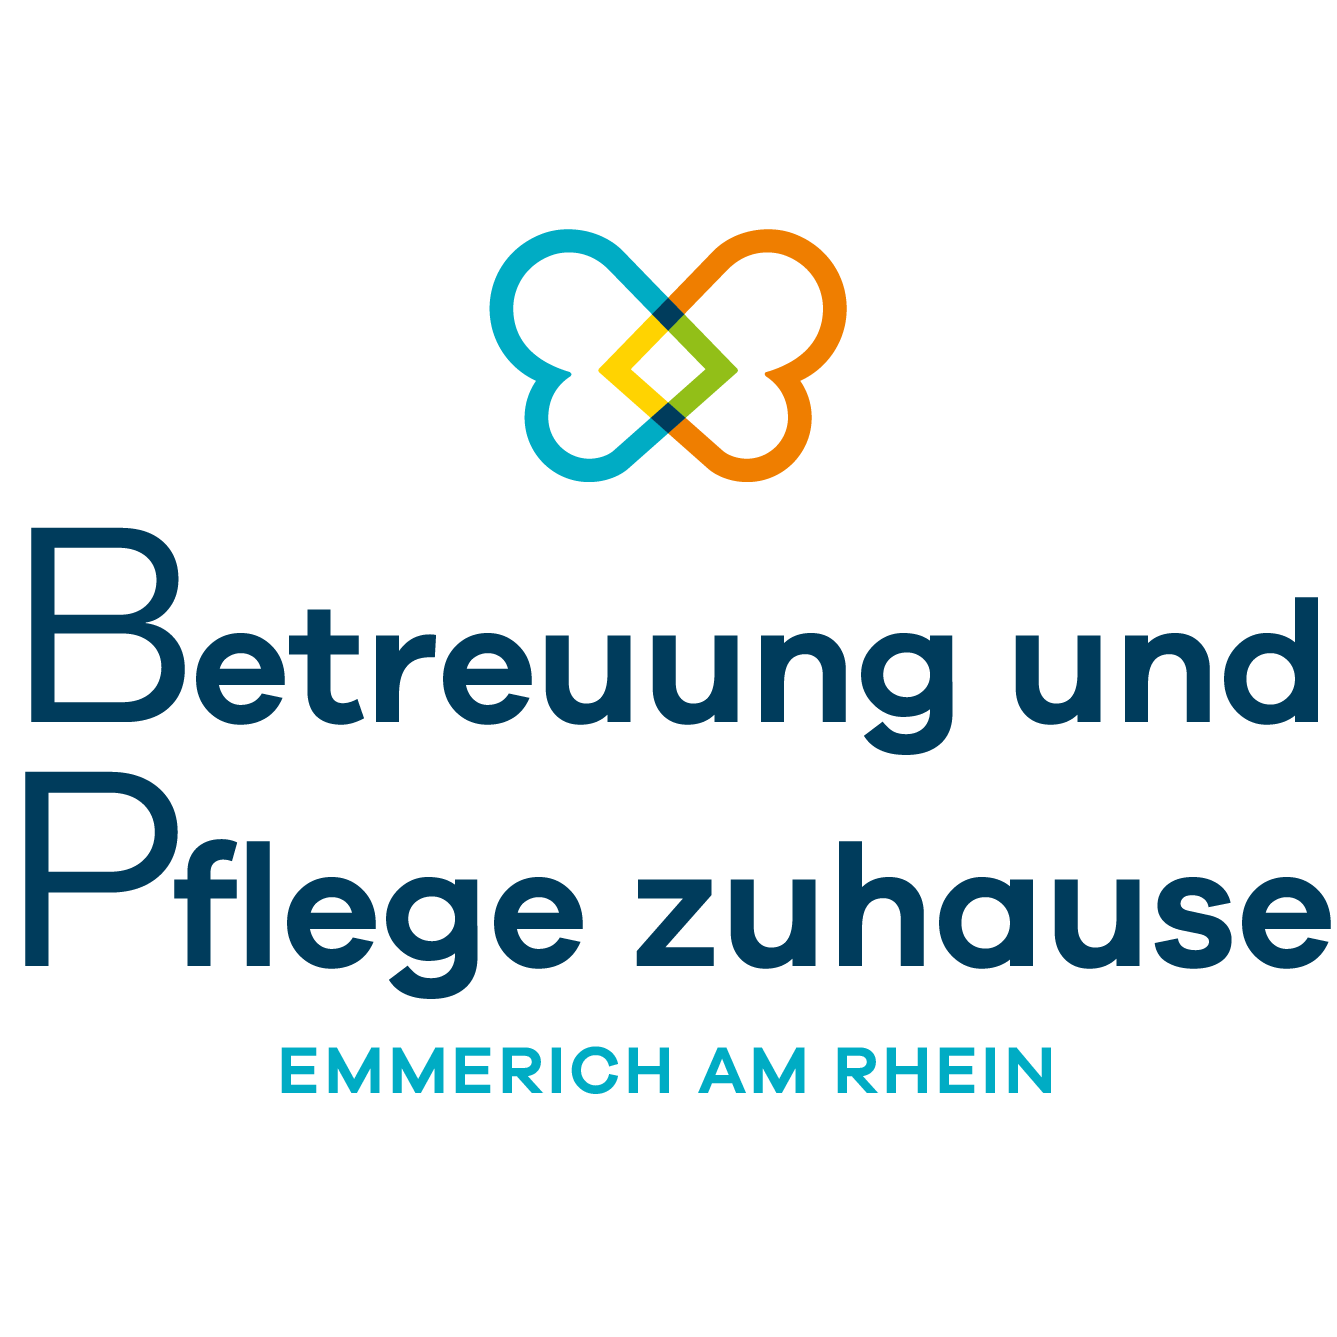 Betreuung und Pflege zuhause Emmerich am Rhein in Emmerich am Rhein - Logo